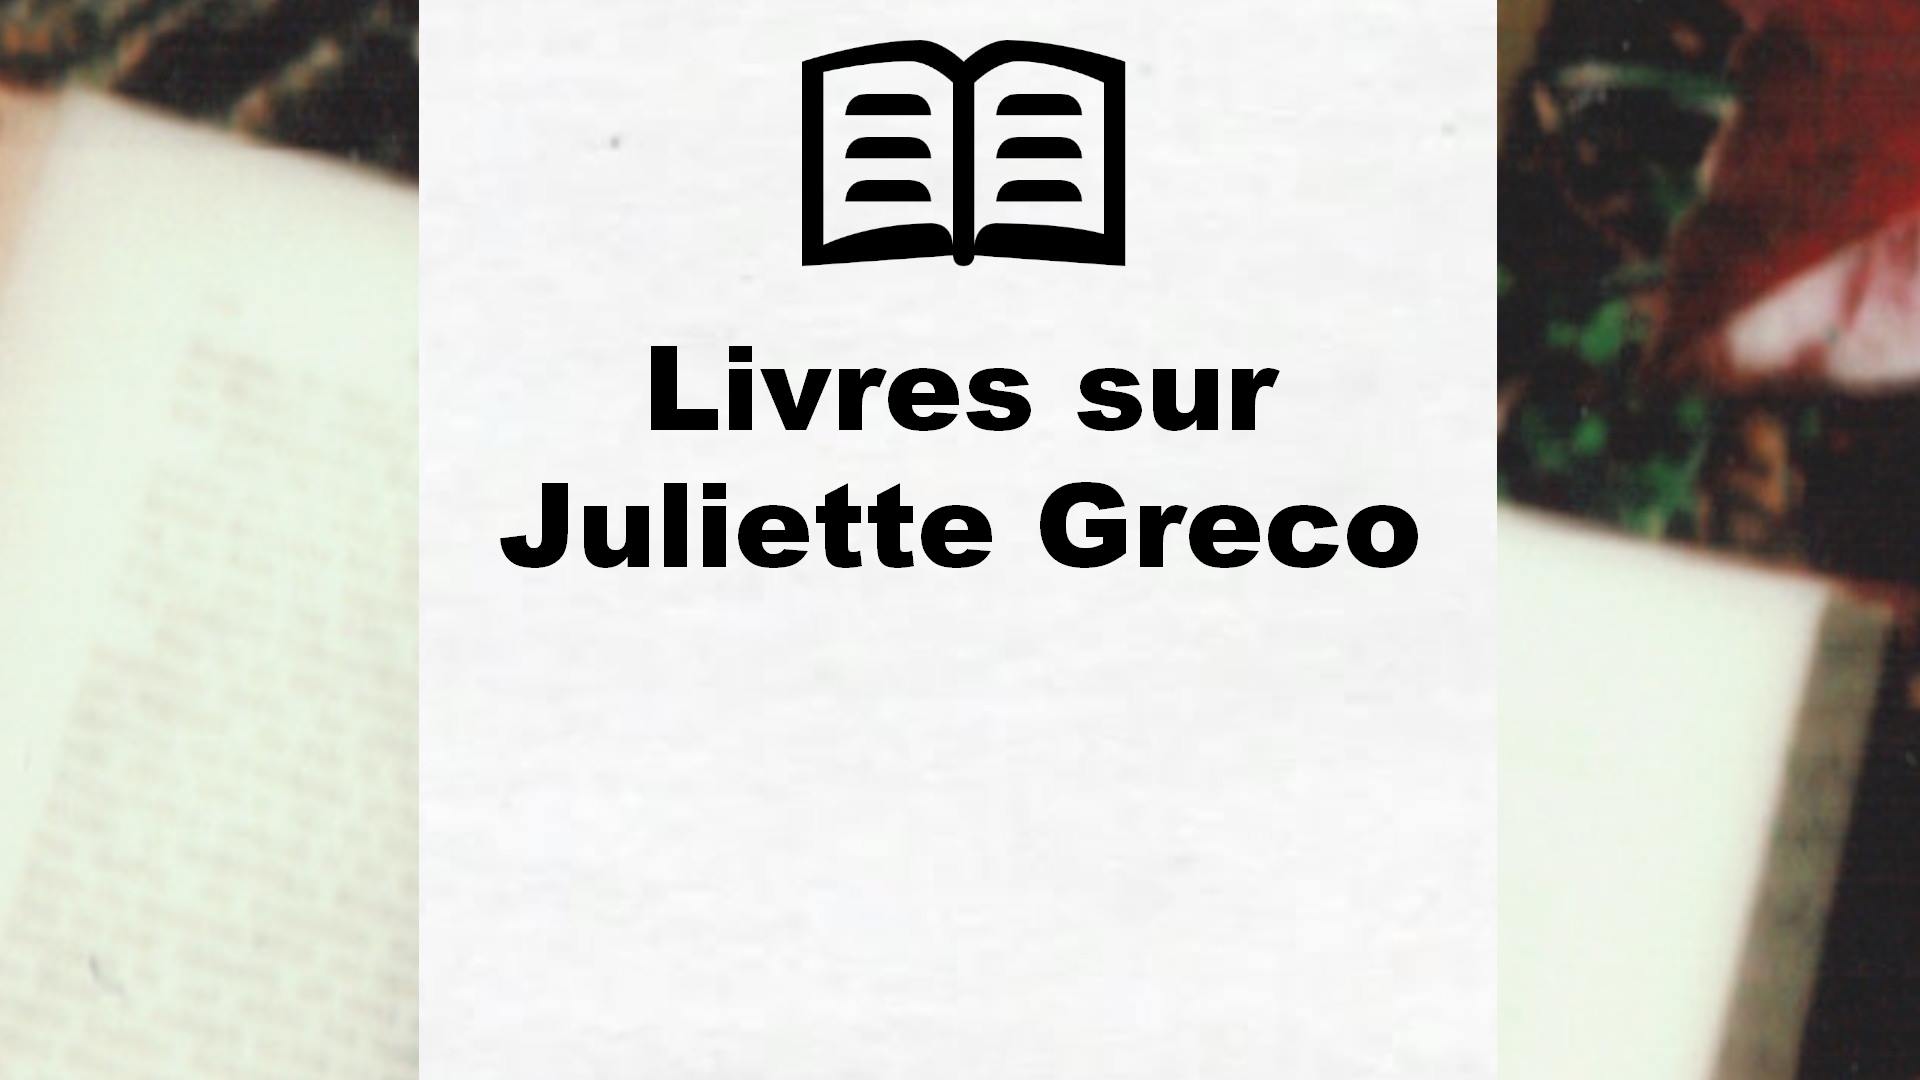 Livres sur Juliette Greco